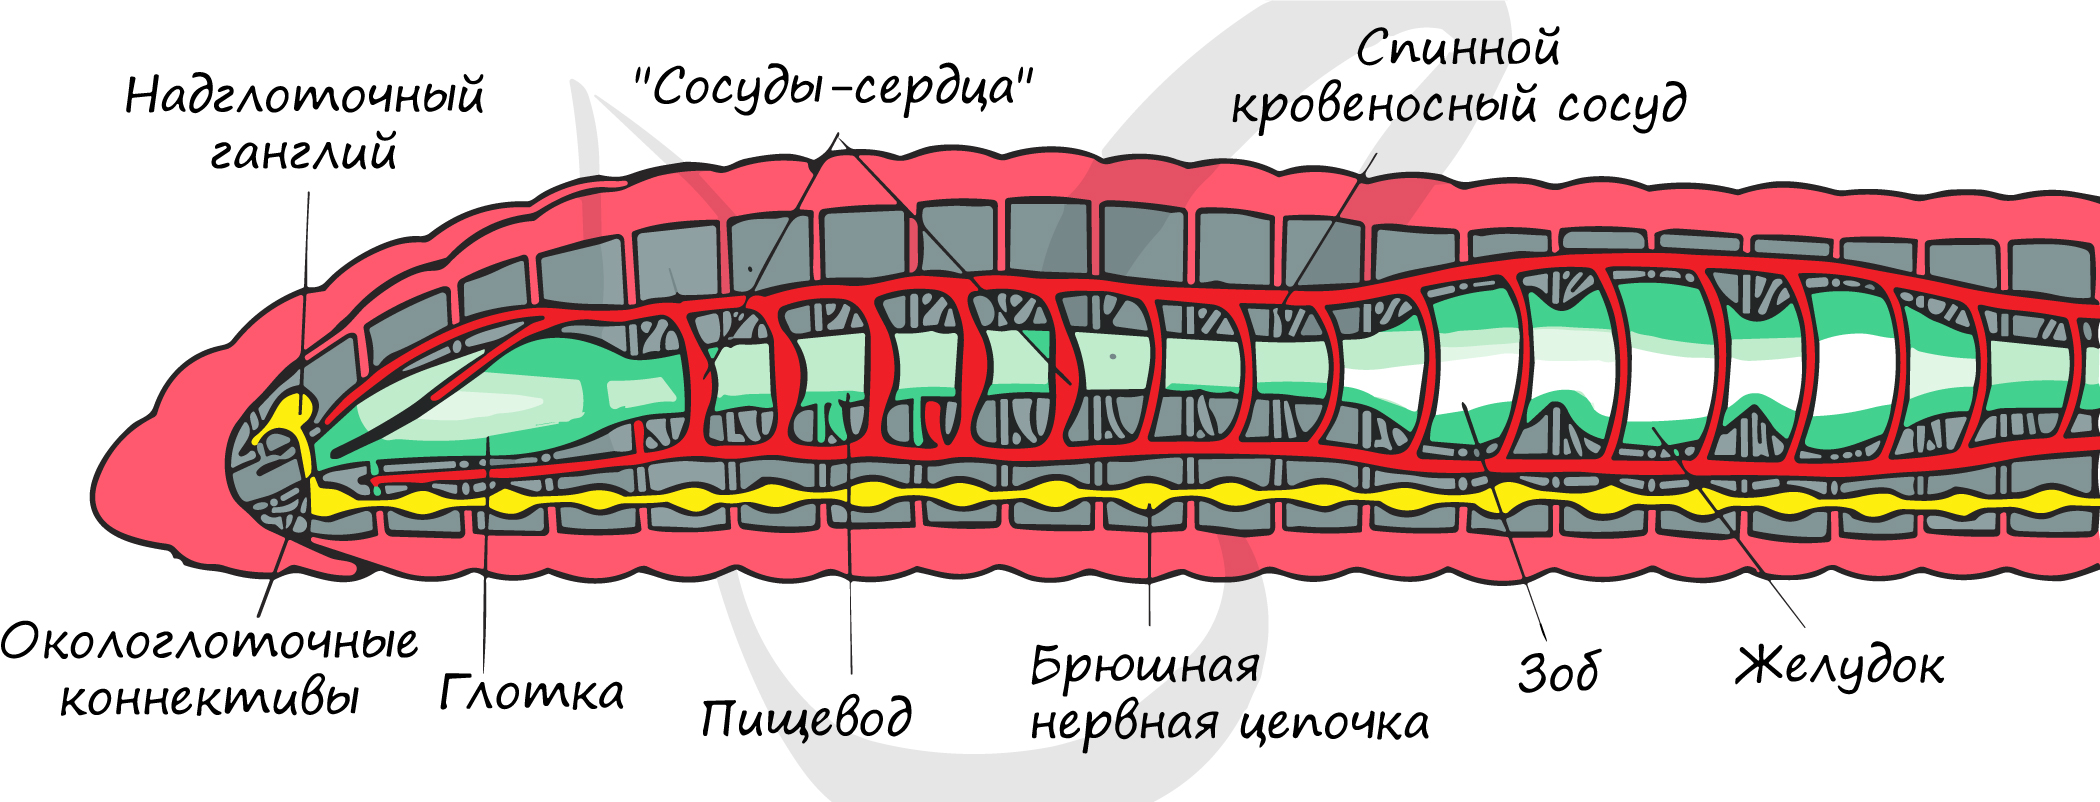 Пищеварительная система органов кольчатых червей. Внутреннее строение кольчатого червя рисунок. Кольчатые черви схема строения. Схема продольного разреза дождевого червя. Пищеварительная и выделительная система дождевого червя.